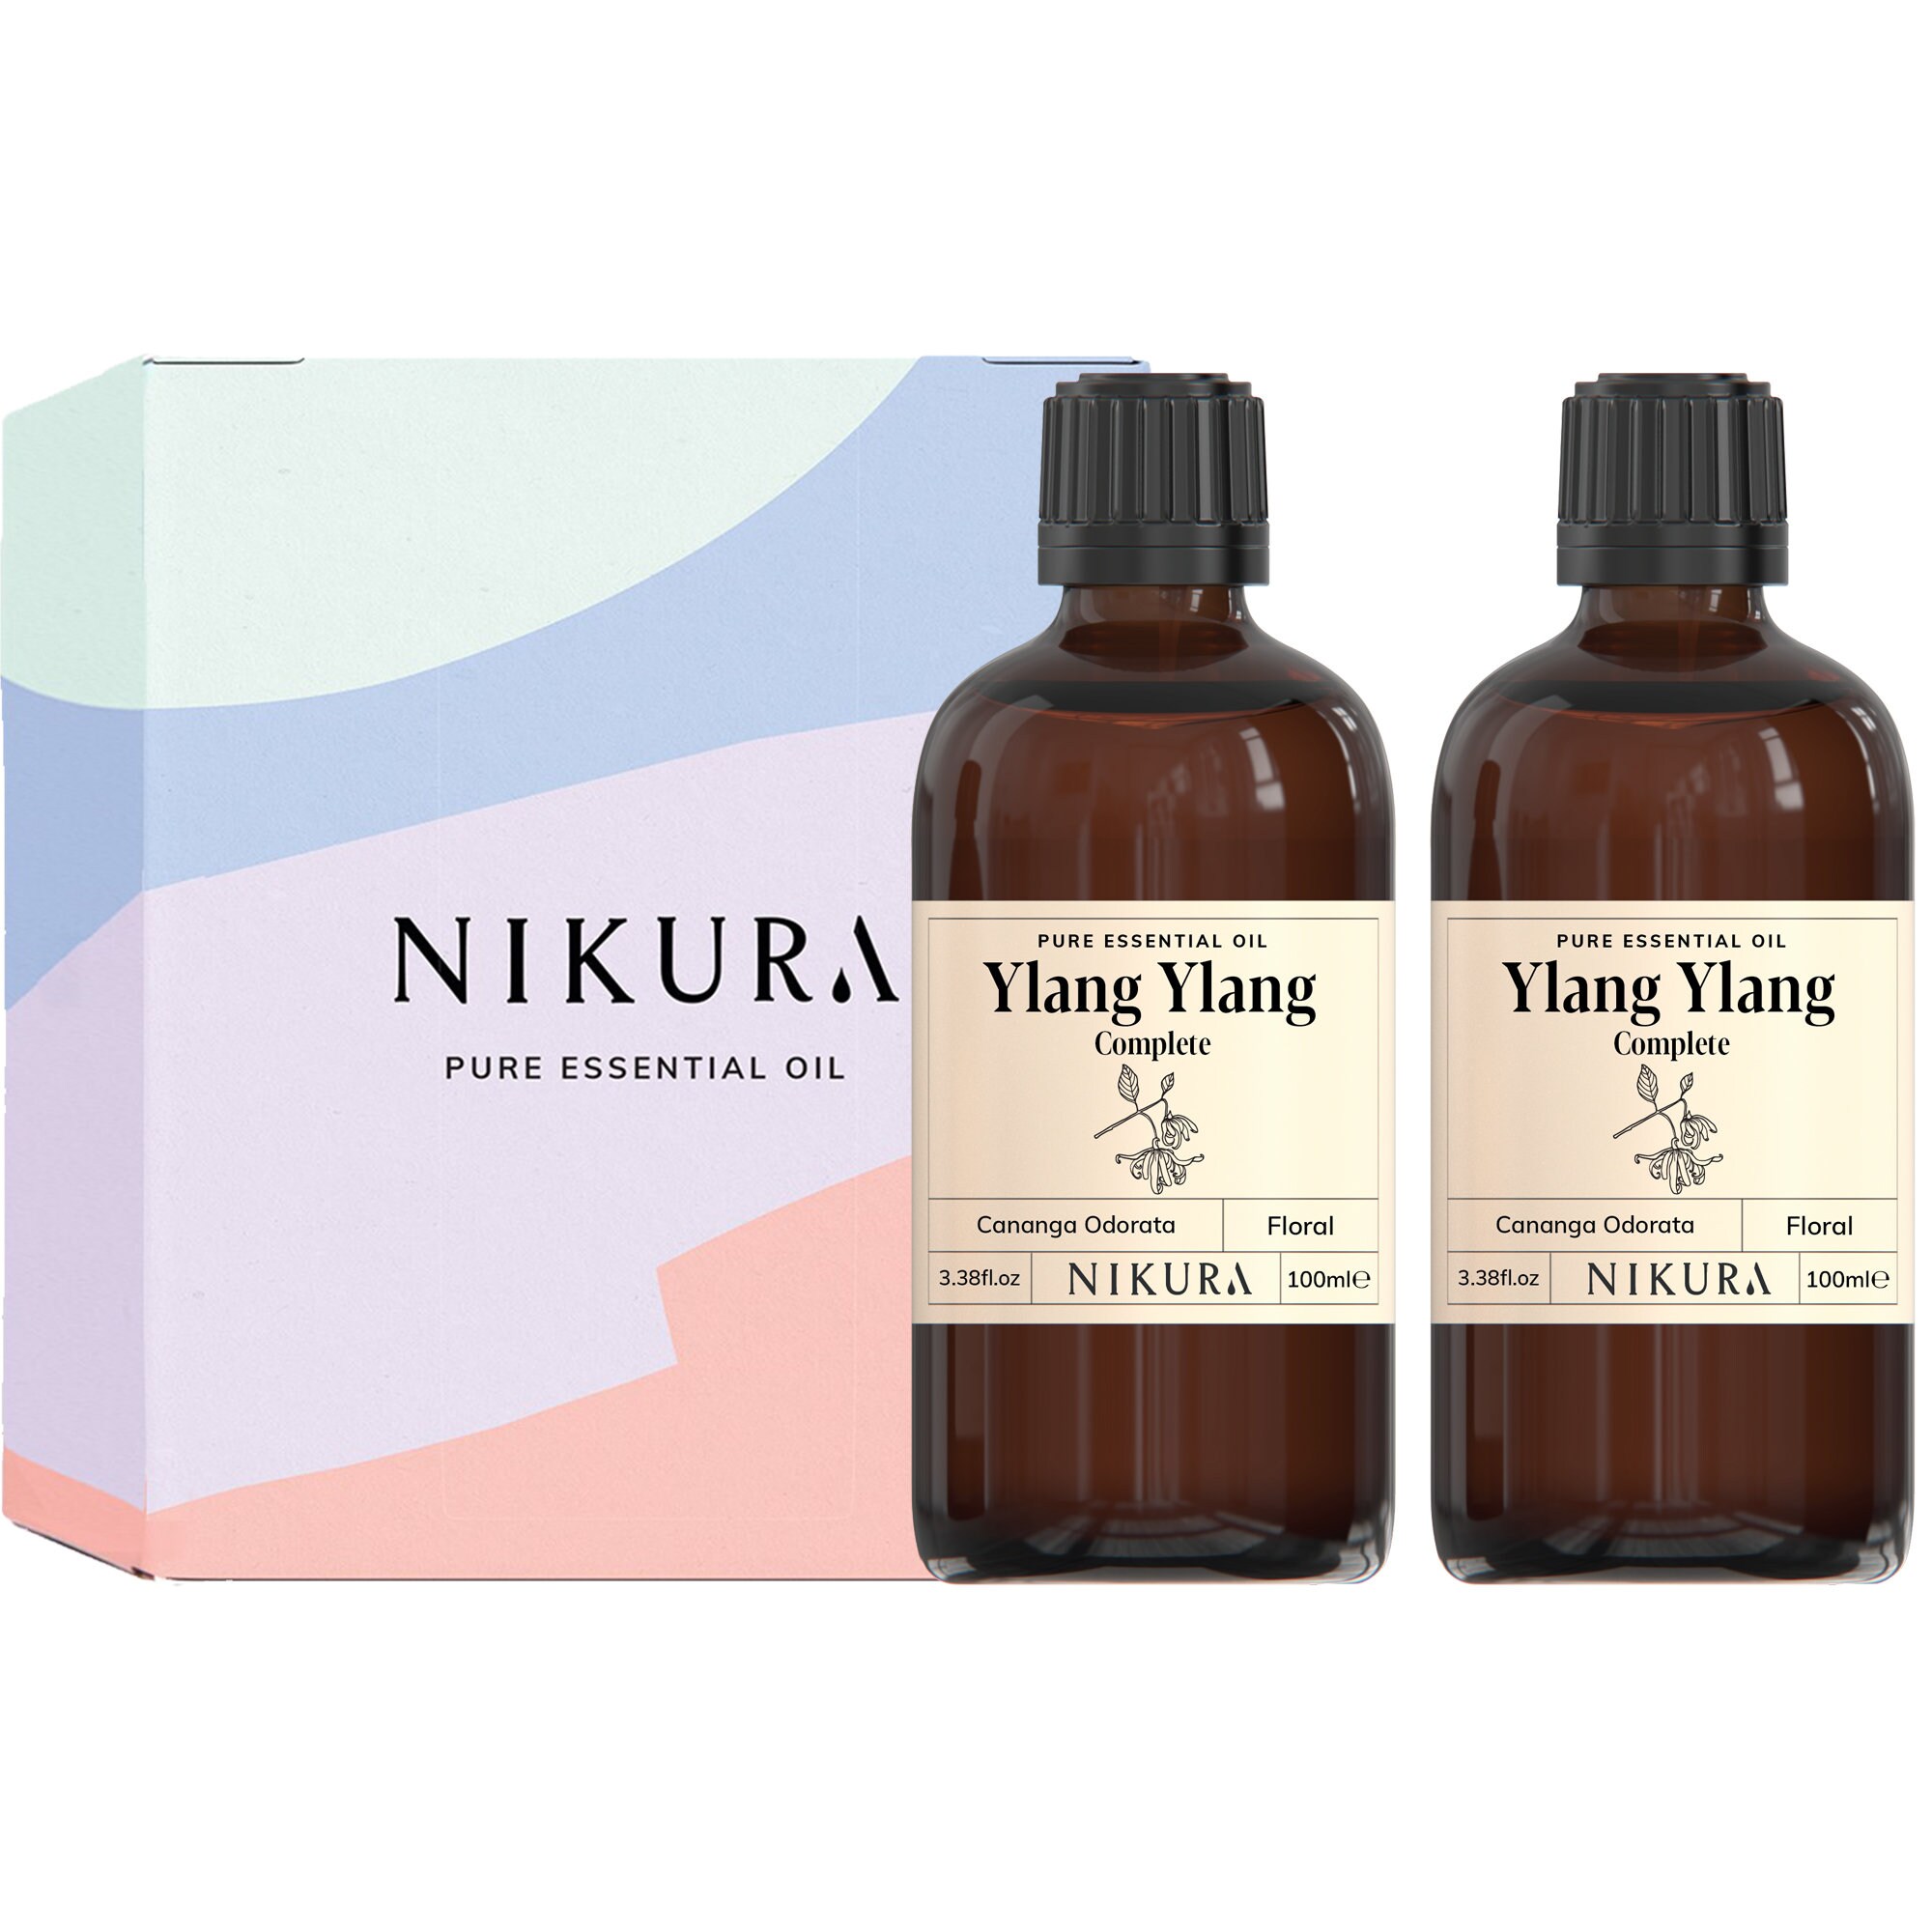 Nikura Ylang Ylang complete Essential Oil Pure & Natural - Etsy UK